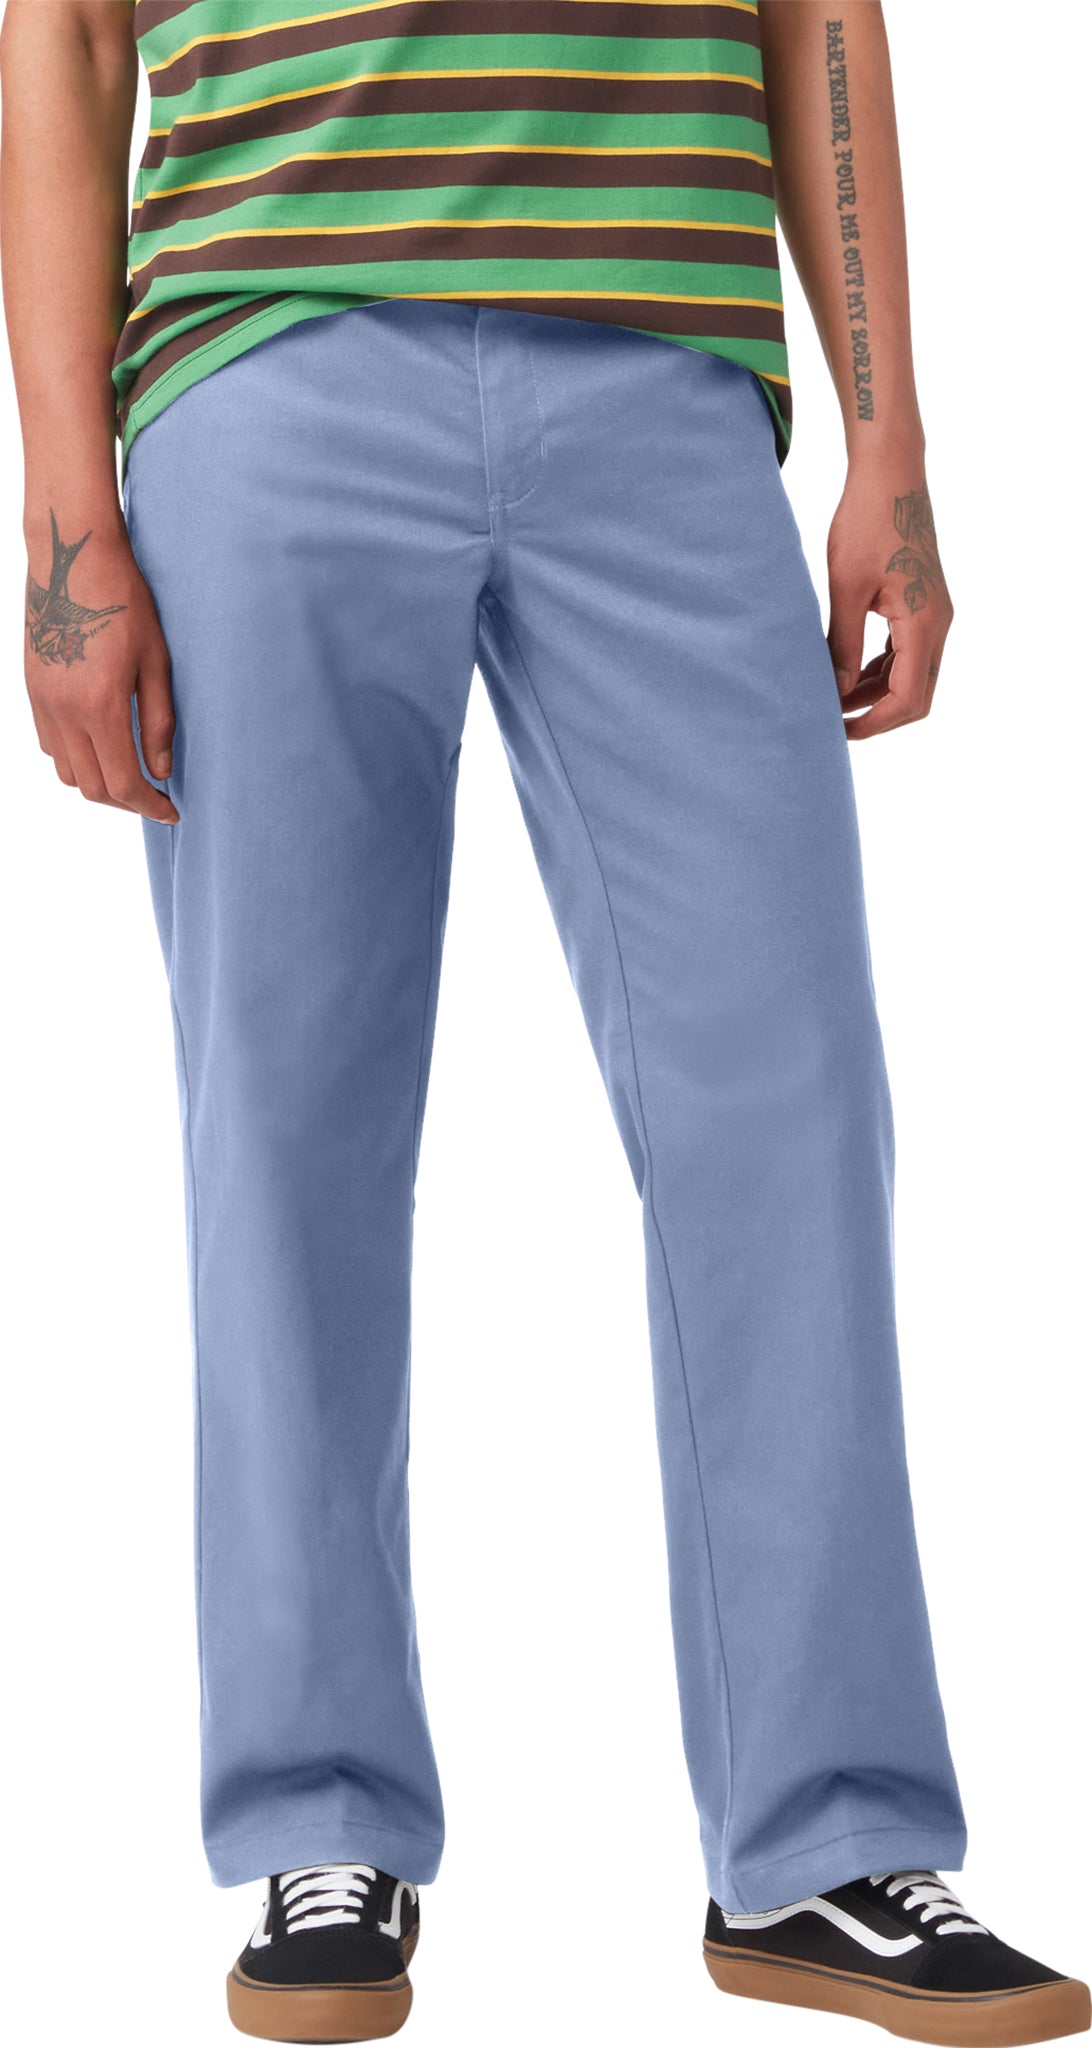 Product Name: Dickies Men's Tough Max Carpenter Pants